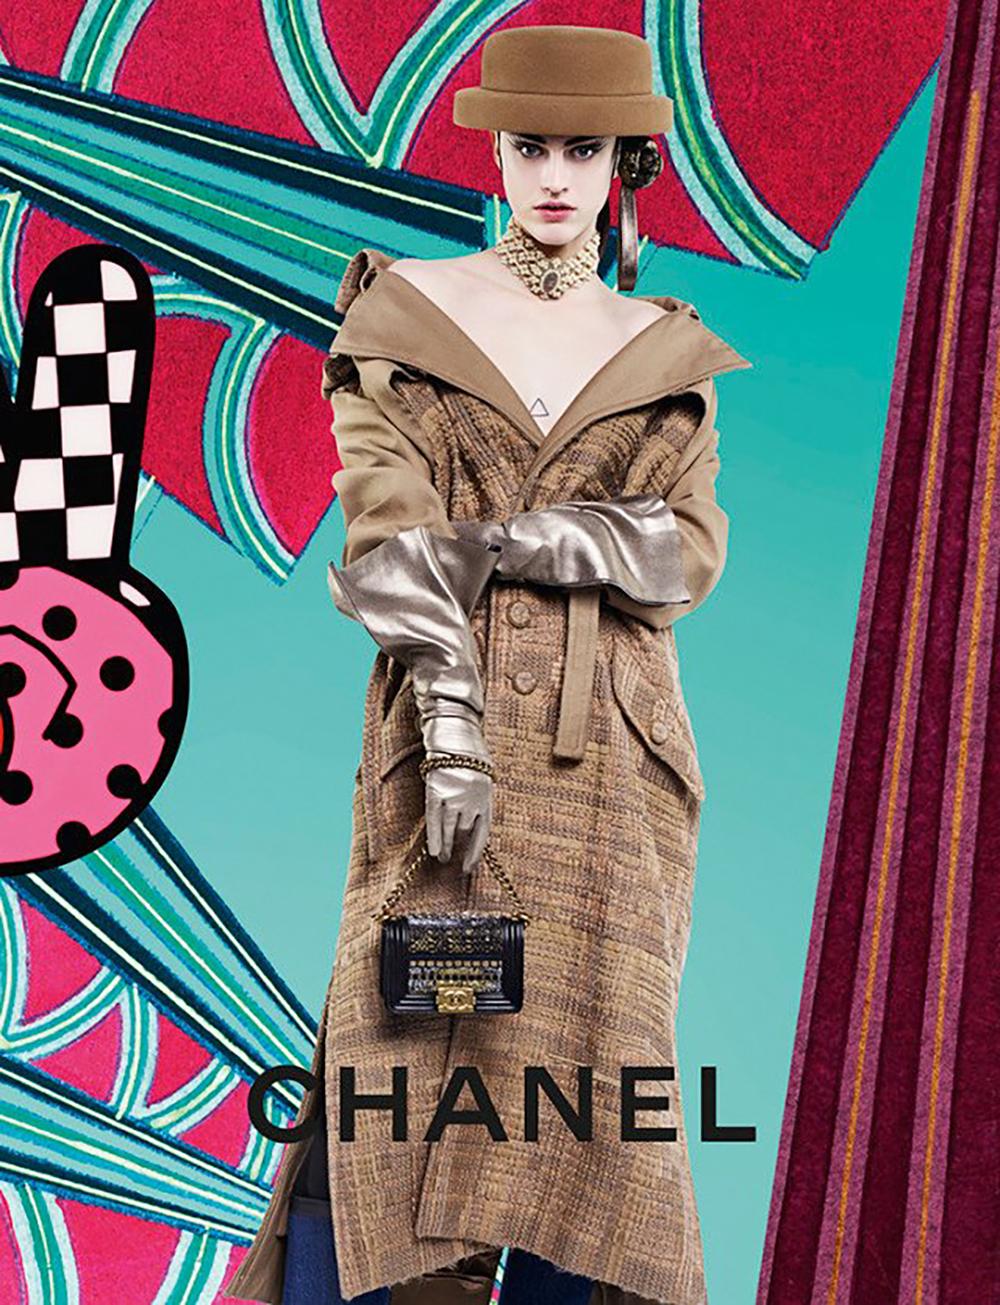 Luxuriöser beiger Chanel-Trench aus edelstem Lesage-Band-Tweed!
Einzelhandelspreis über 14.000$
Zu sehen in Werbekampagnen und auf Plakatwänden auf der ganzen Welt!
- CC-Logo-Tweedknöpfe
- Tweedgürtel mit CC-Schnalle
- tonales